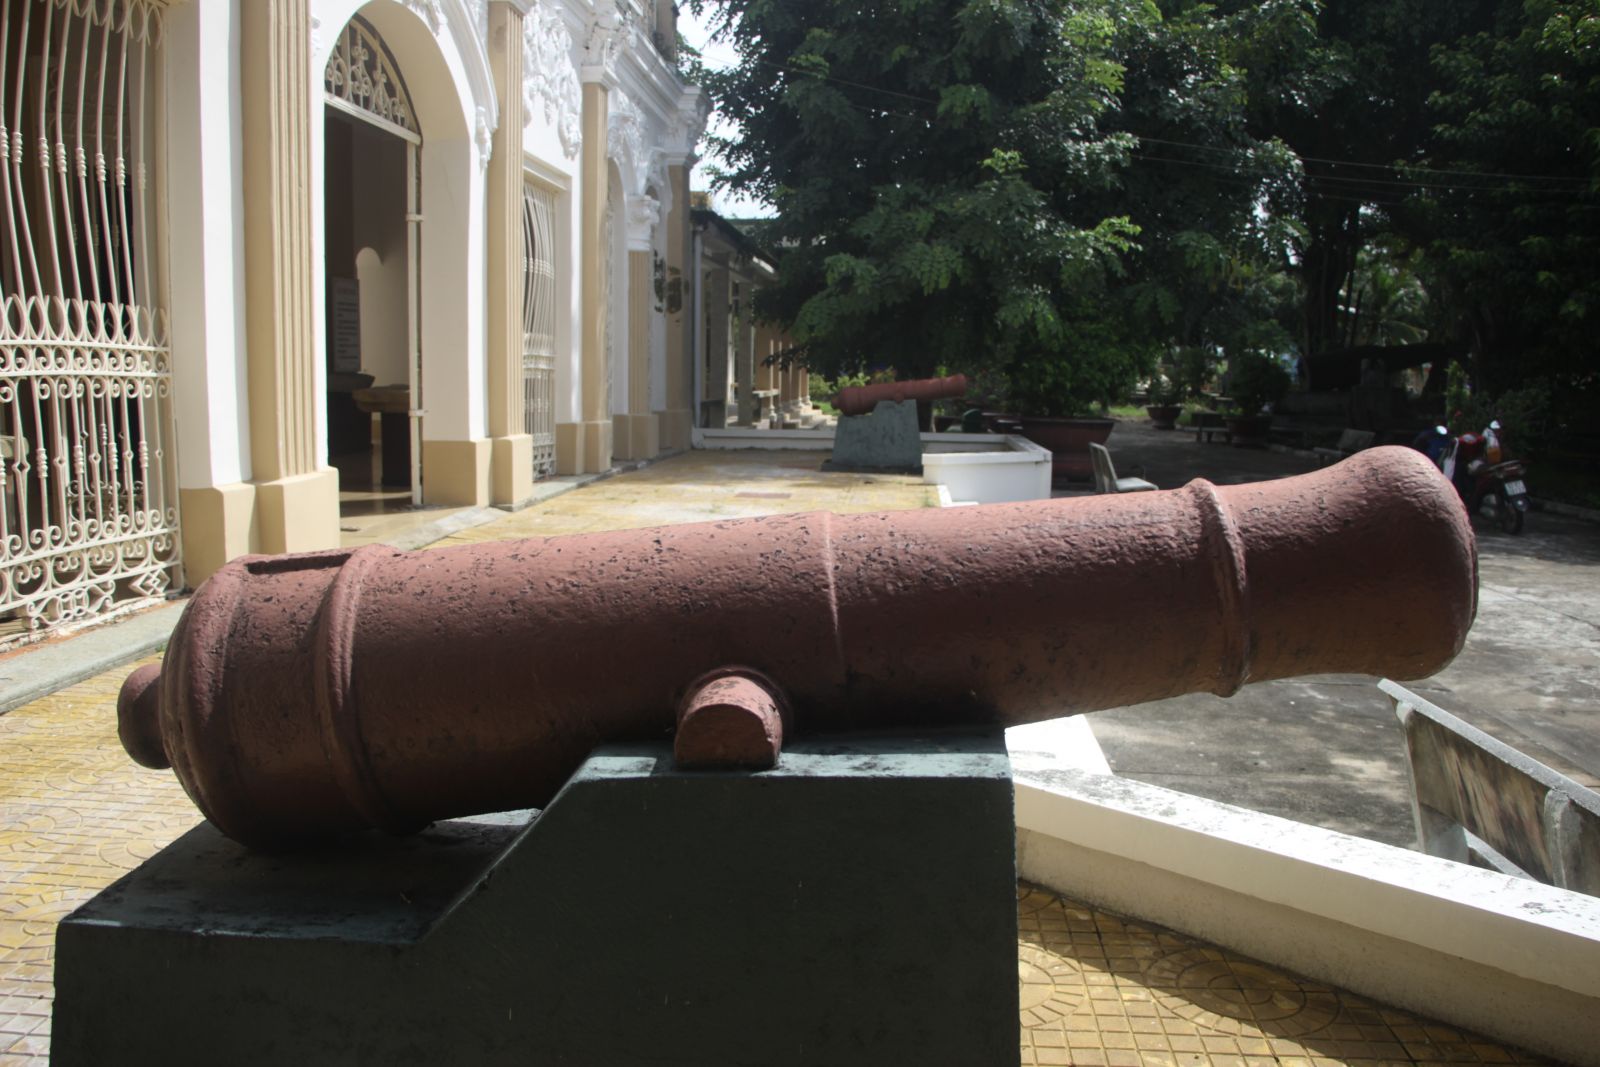 Khẩu thần công cỡ cối 80 được cho là vũ khí của nghĩa quân Võ Duy Dương còn sót lại được đặt tại Bảo tàng Thư viện tỉnh